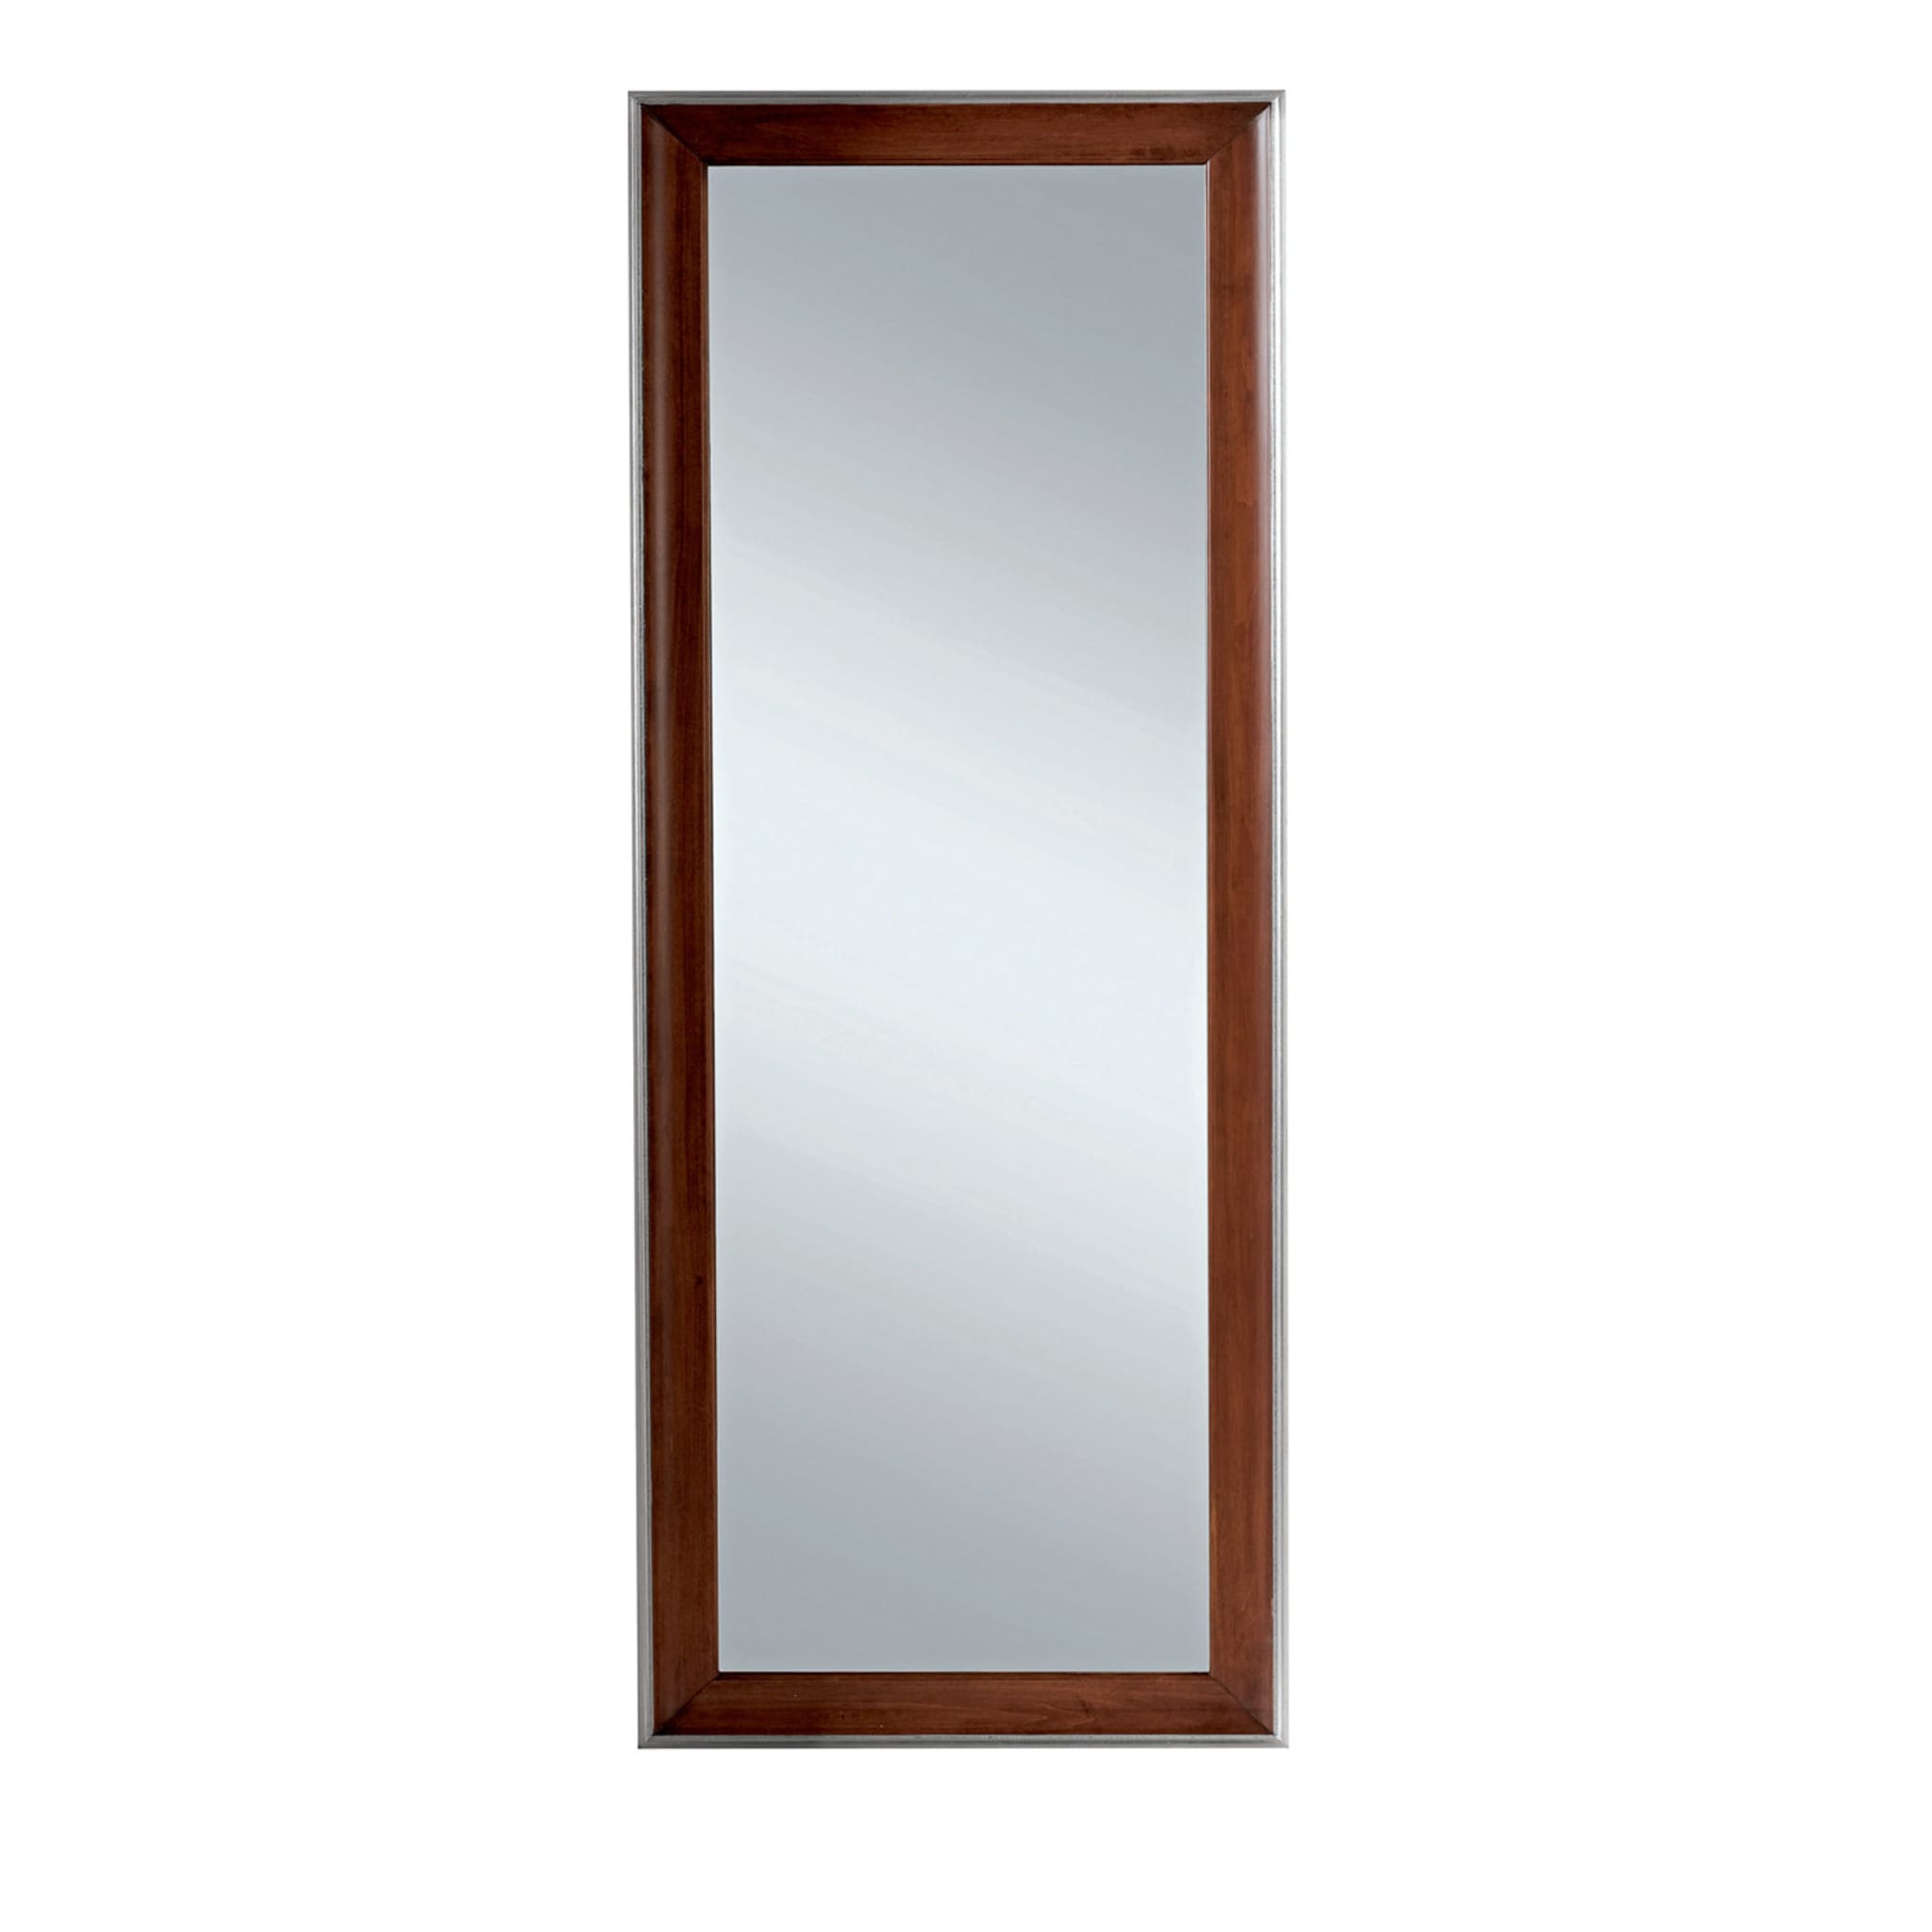 Specchio rettangolare con cornice in legno marrone - Vista principale